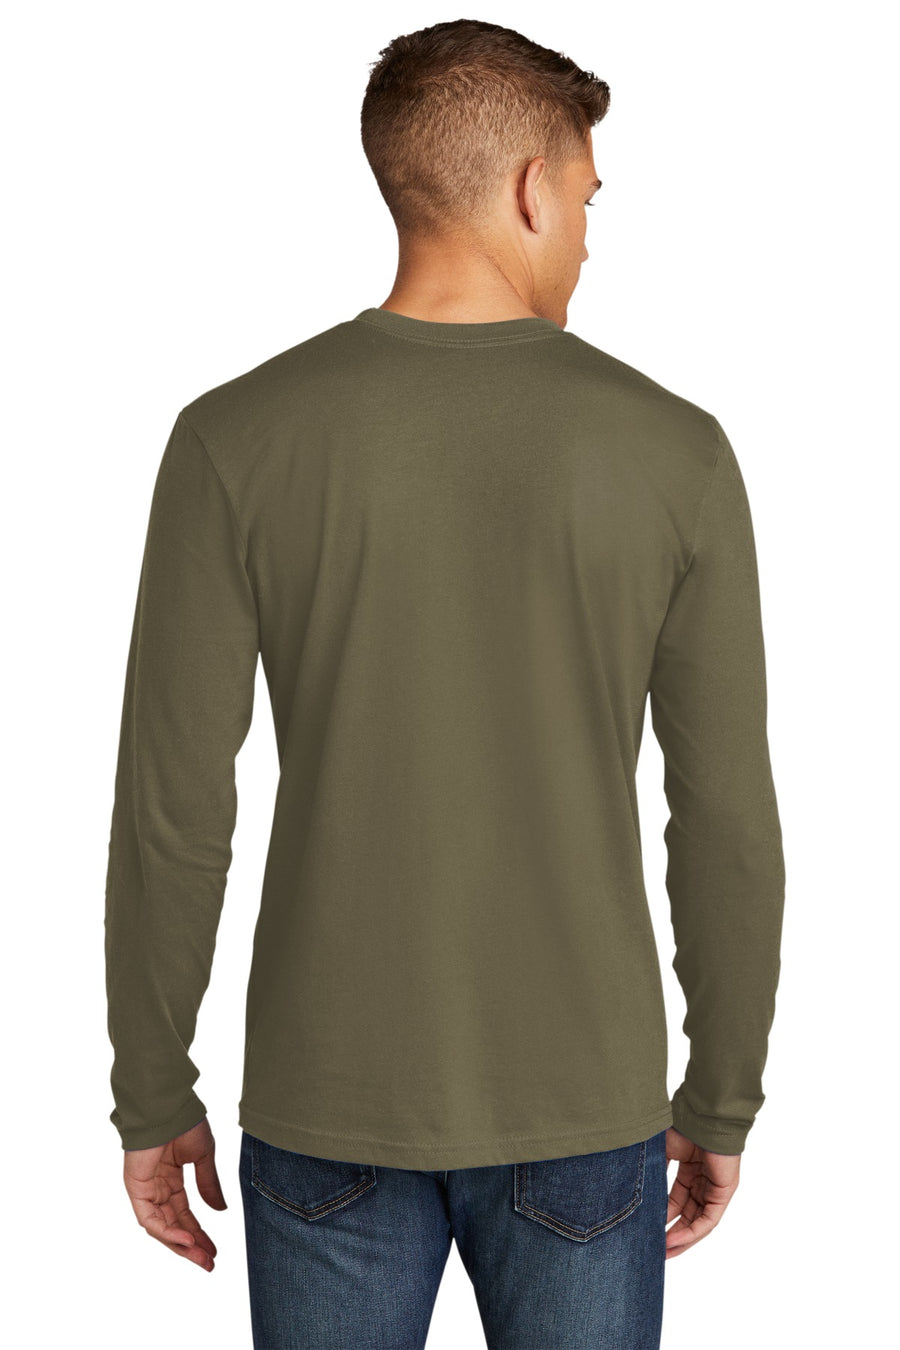 NL3601-Military Green-back_model